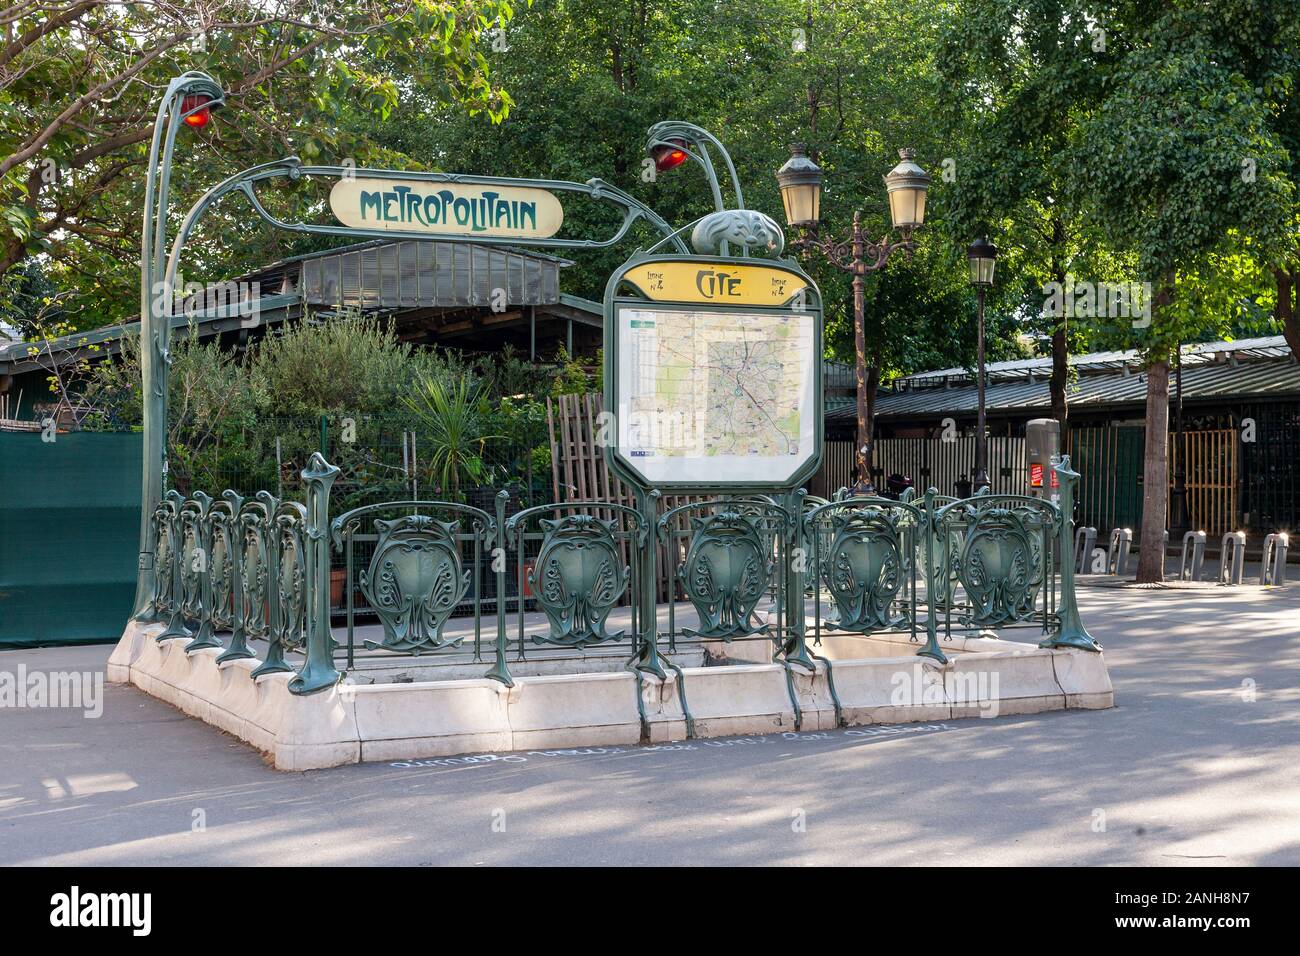 The original art deco entrance can still be seen at the Cité stop on the Parisian Metro, Paris, Ile de la Cité, France. Stock Photo